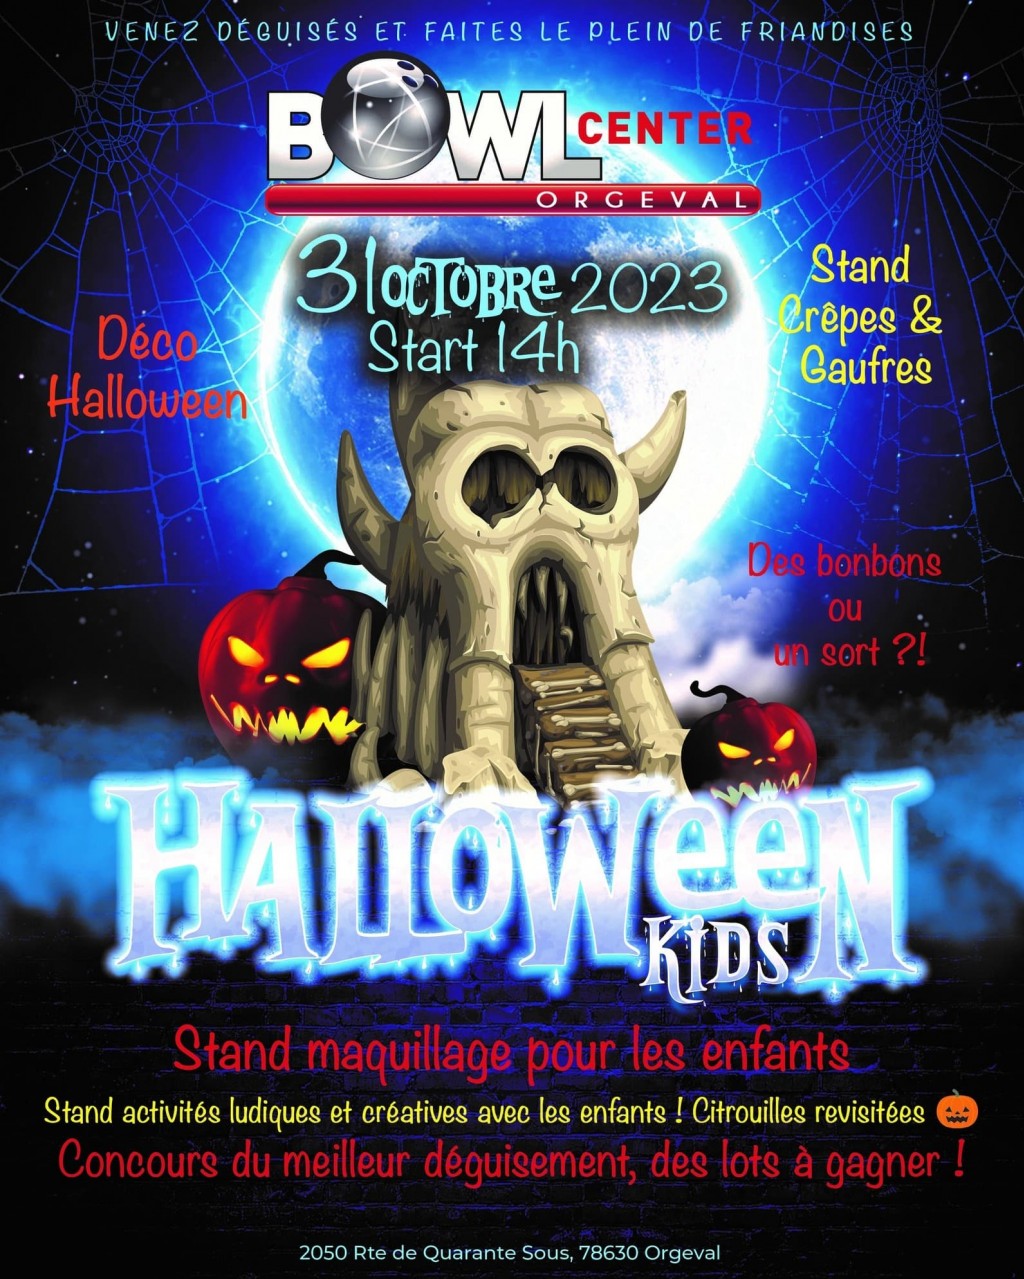 Venez passer Halloween au Bowlcenter !!!!